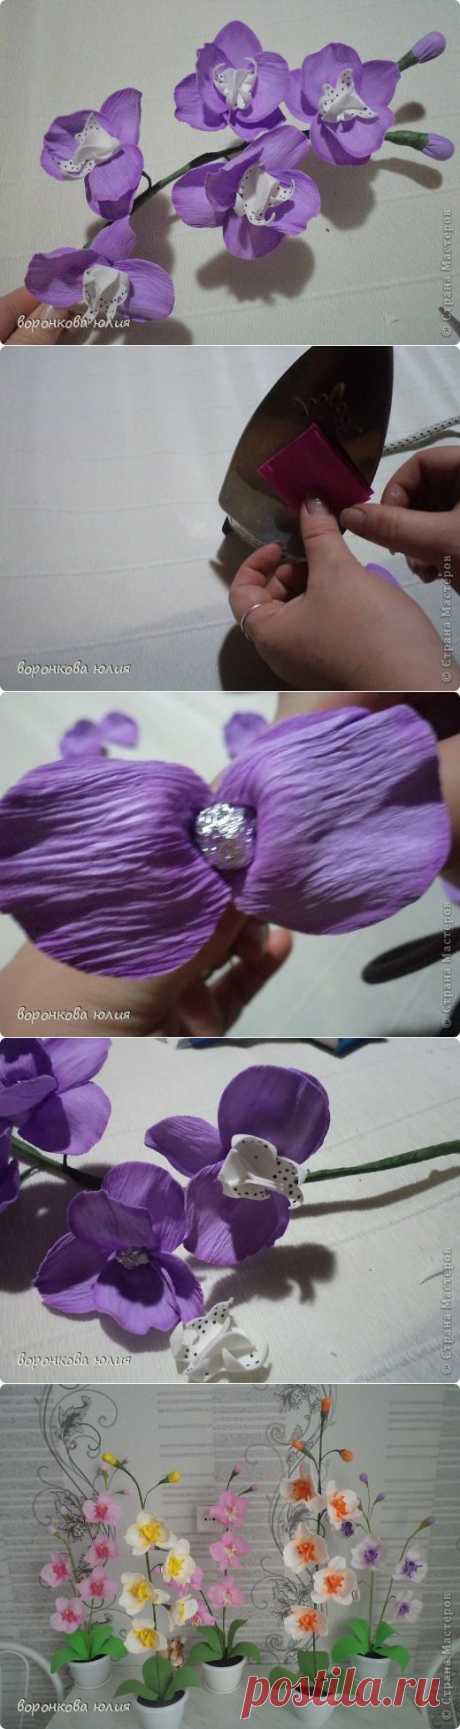 цветок орхидеи из фома, и как придать структуру листку без молда .м.к. | Страна Мастеров